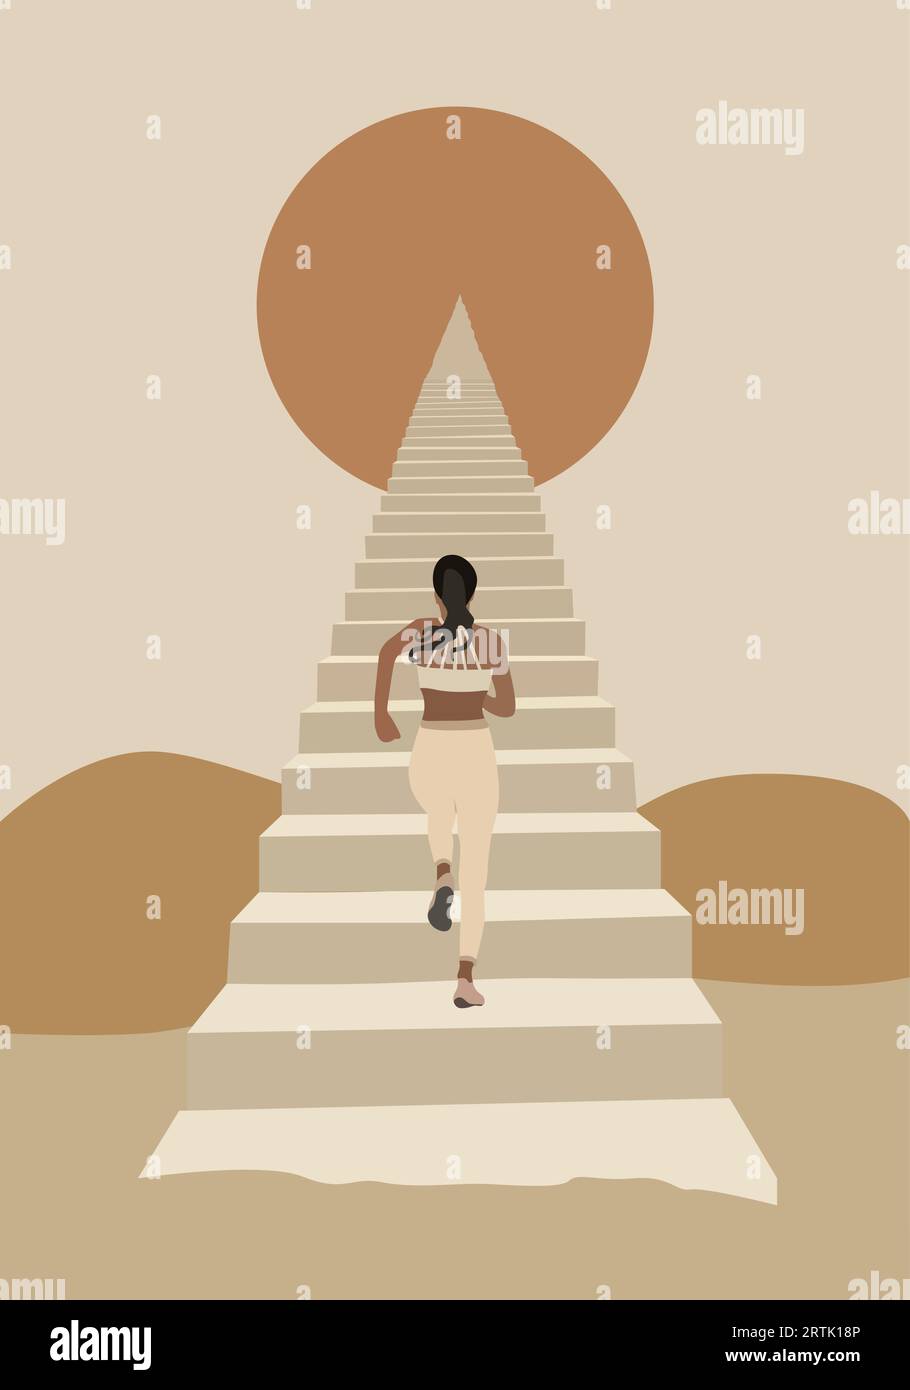 Illustration einer Frau, die die Treppe hinauf zur Spitze der pyramidenförmigen Treppe zur Sonne, zum Mond oder zum Stern zwischen den Hügeln im Retro-Stil geht Stock Vektor